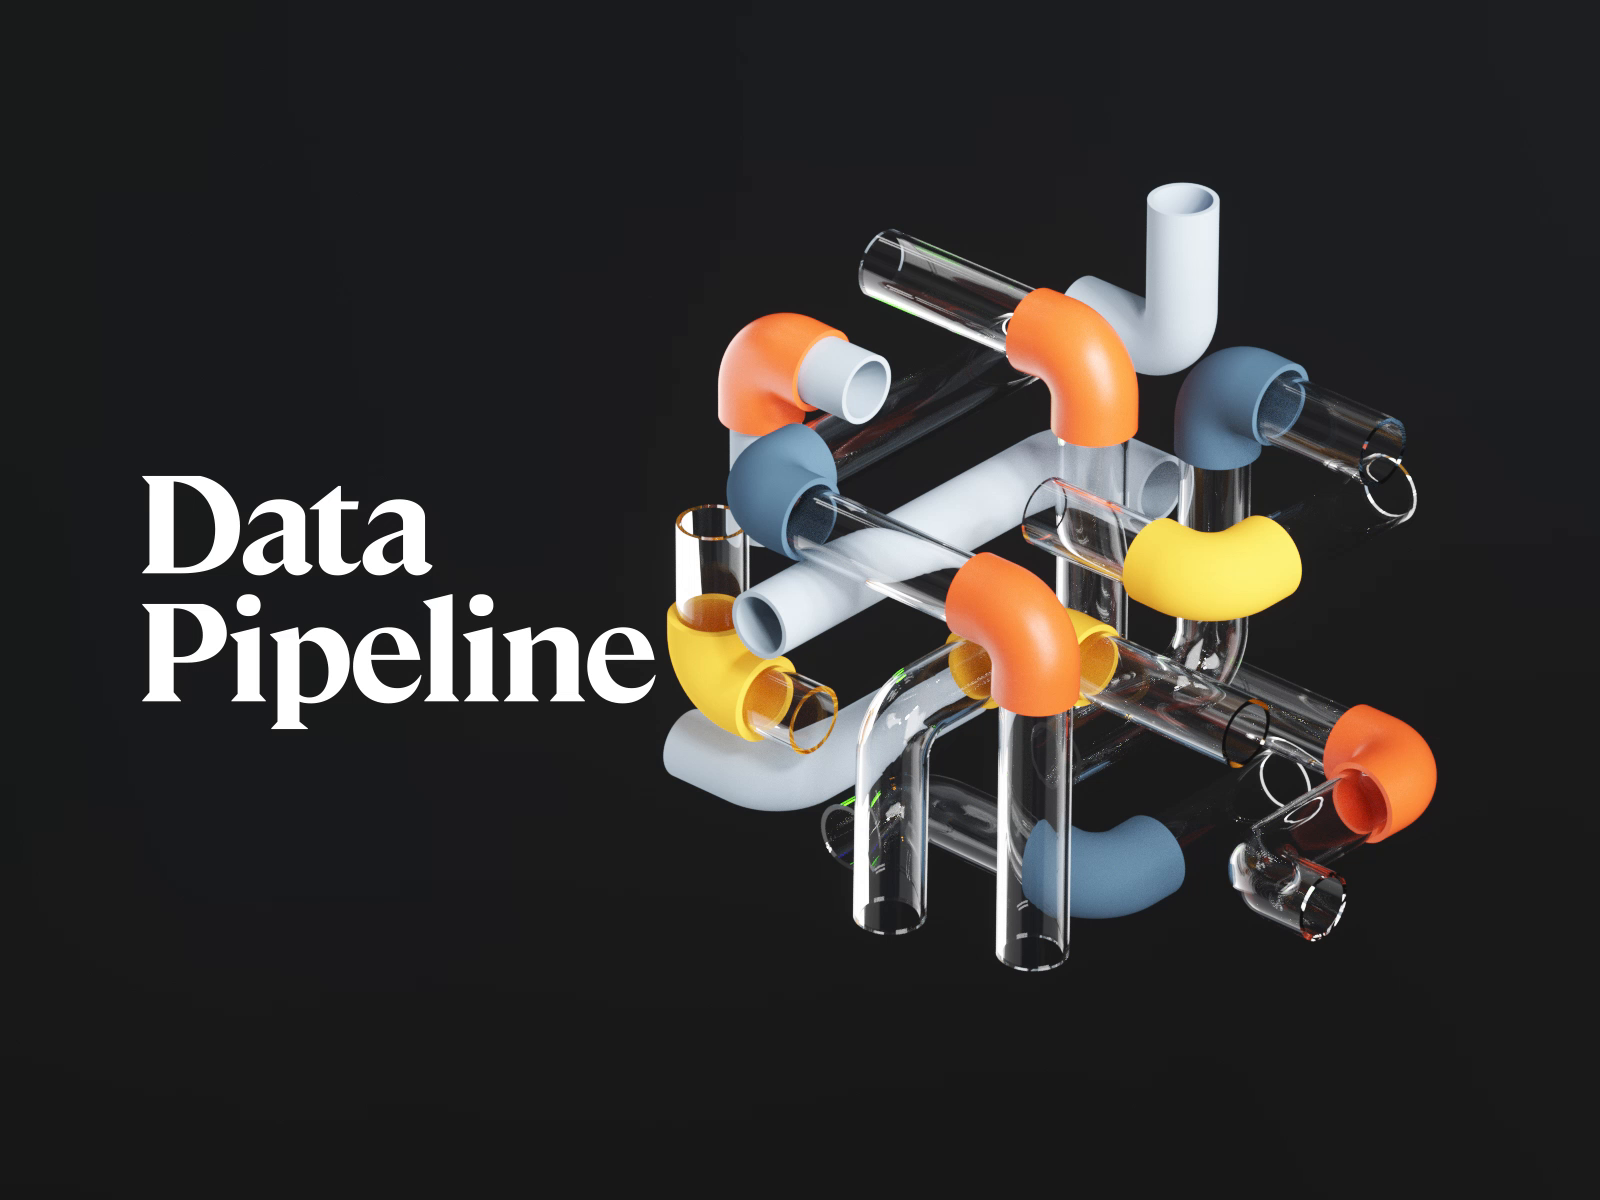 Data Pipeline balls code data database fire illustration pipeline pipes running timeless tube web work workflow